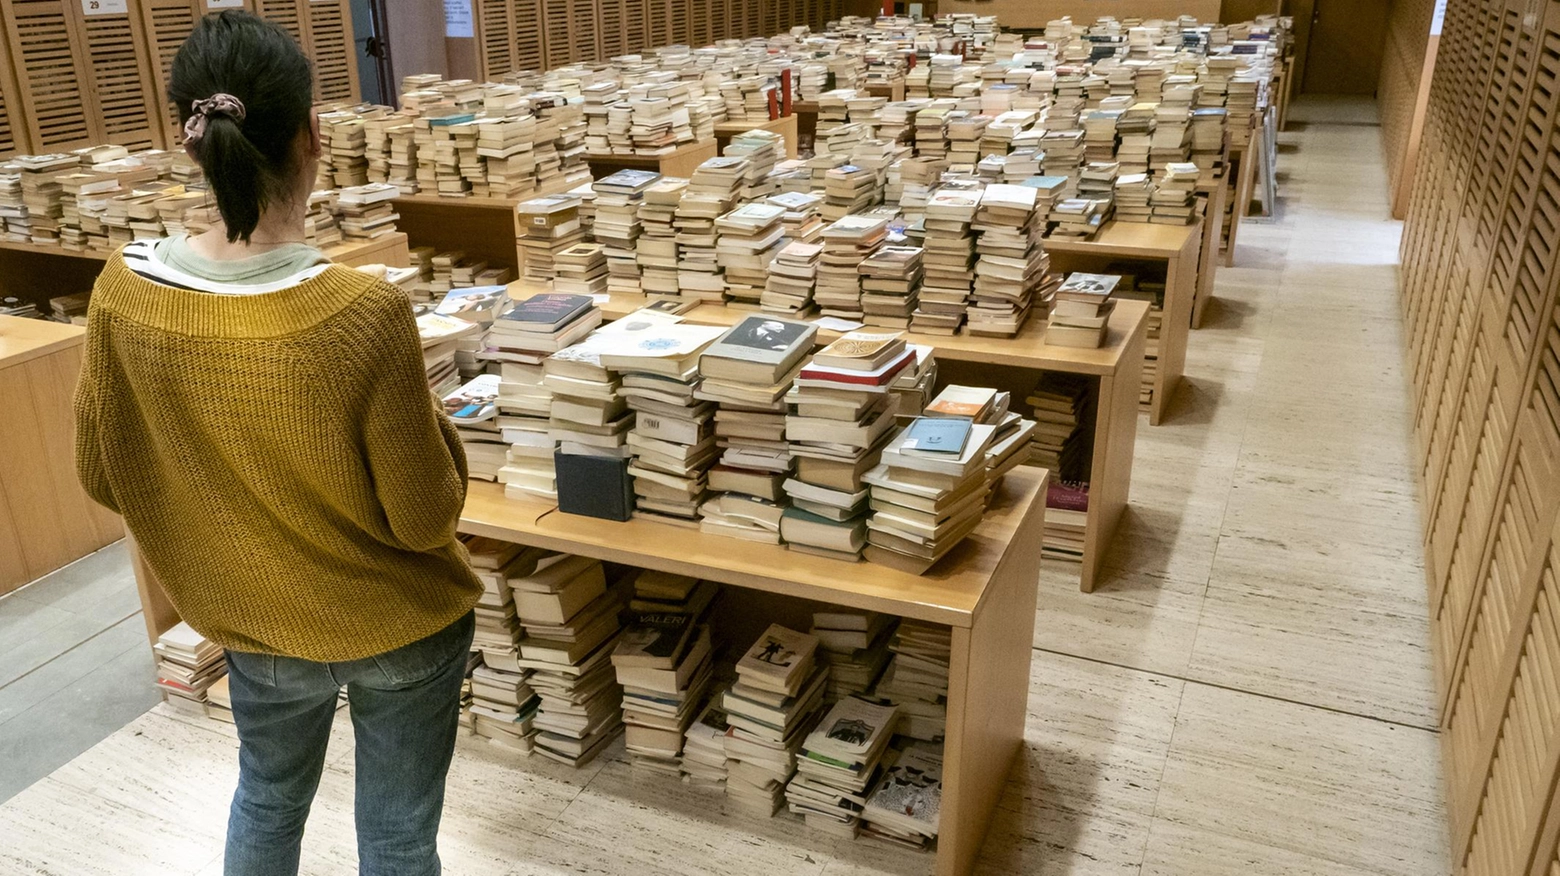 Biblioteca devastata  Sala Ragazzi spazzata via  "Vogliamo farla rinascere"